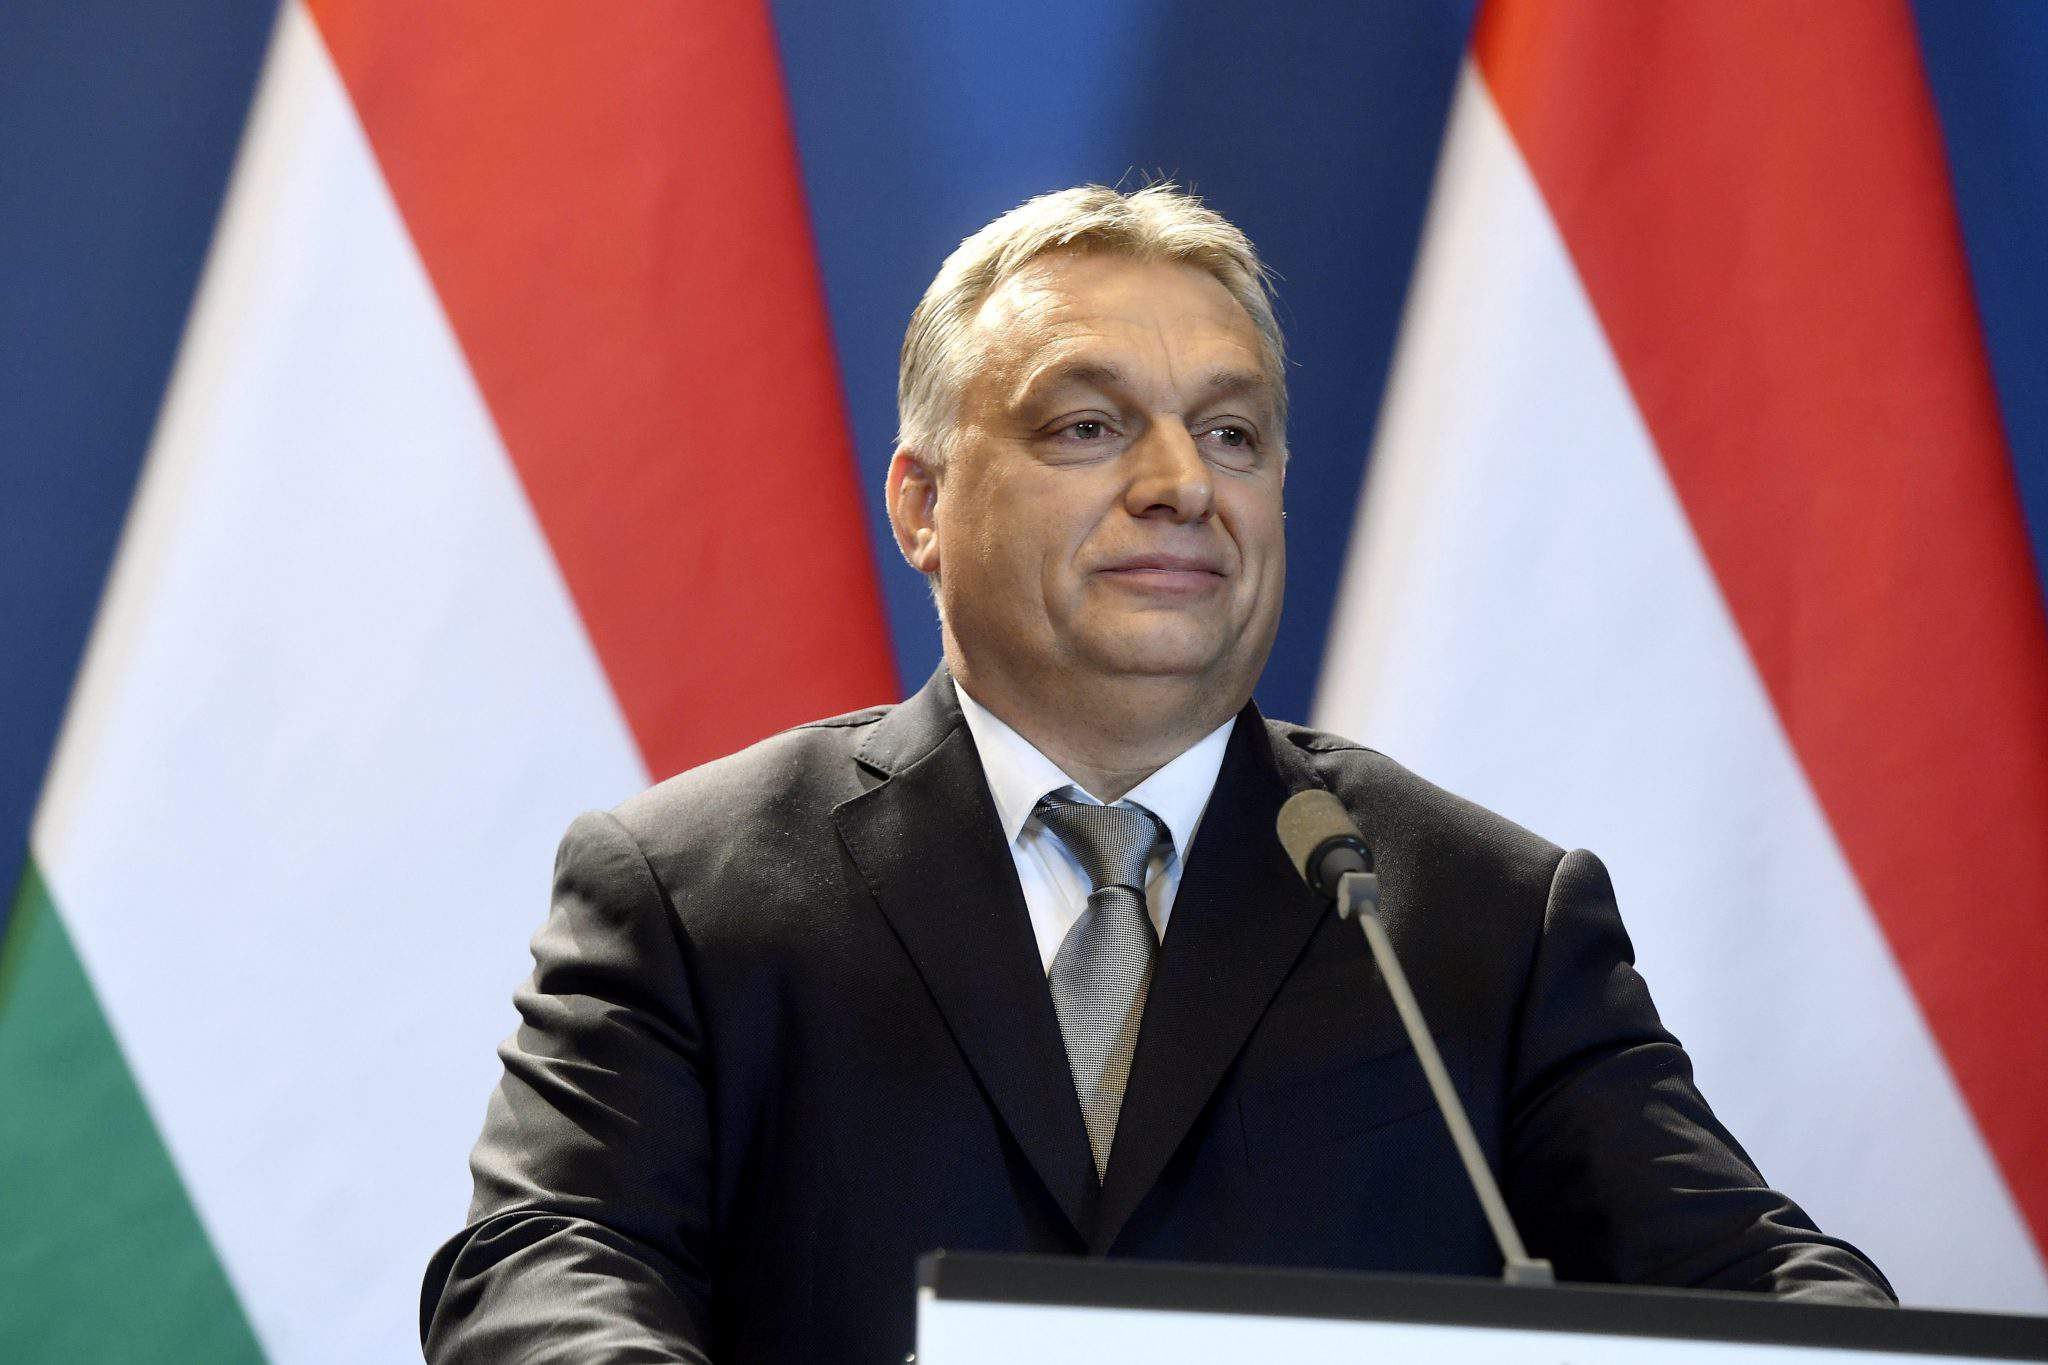 フィデスの勝利はハンガリーの民主主義を脅かす可能性がある